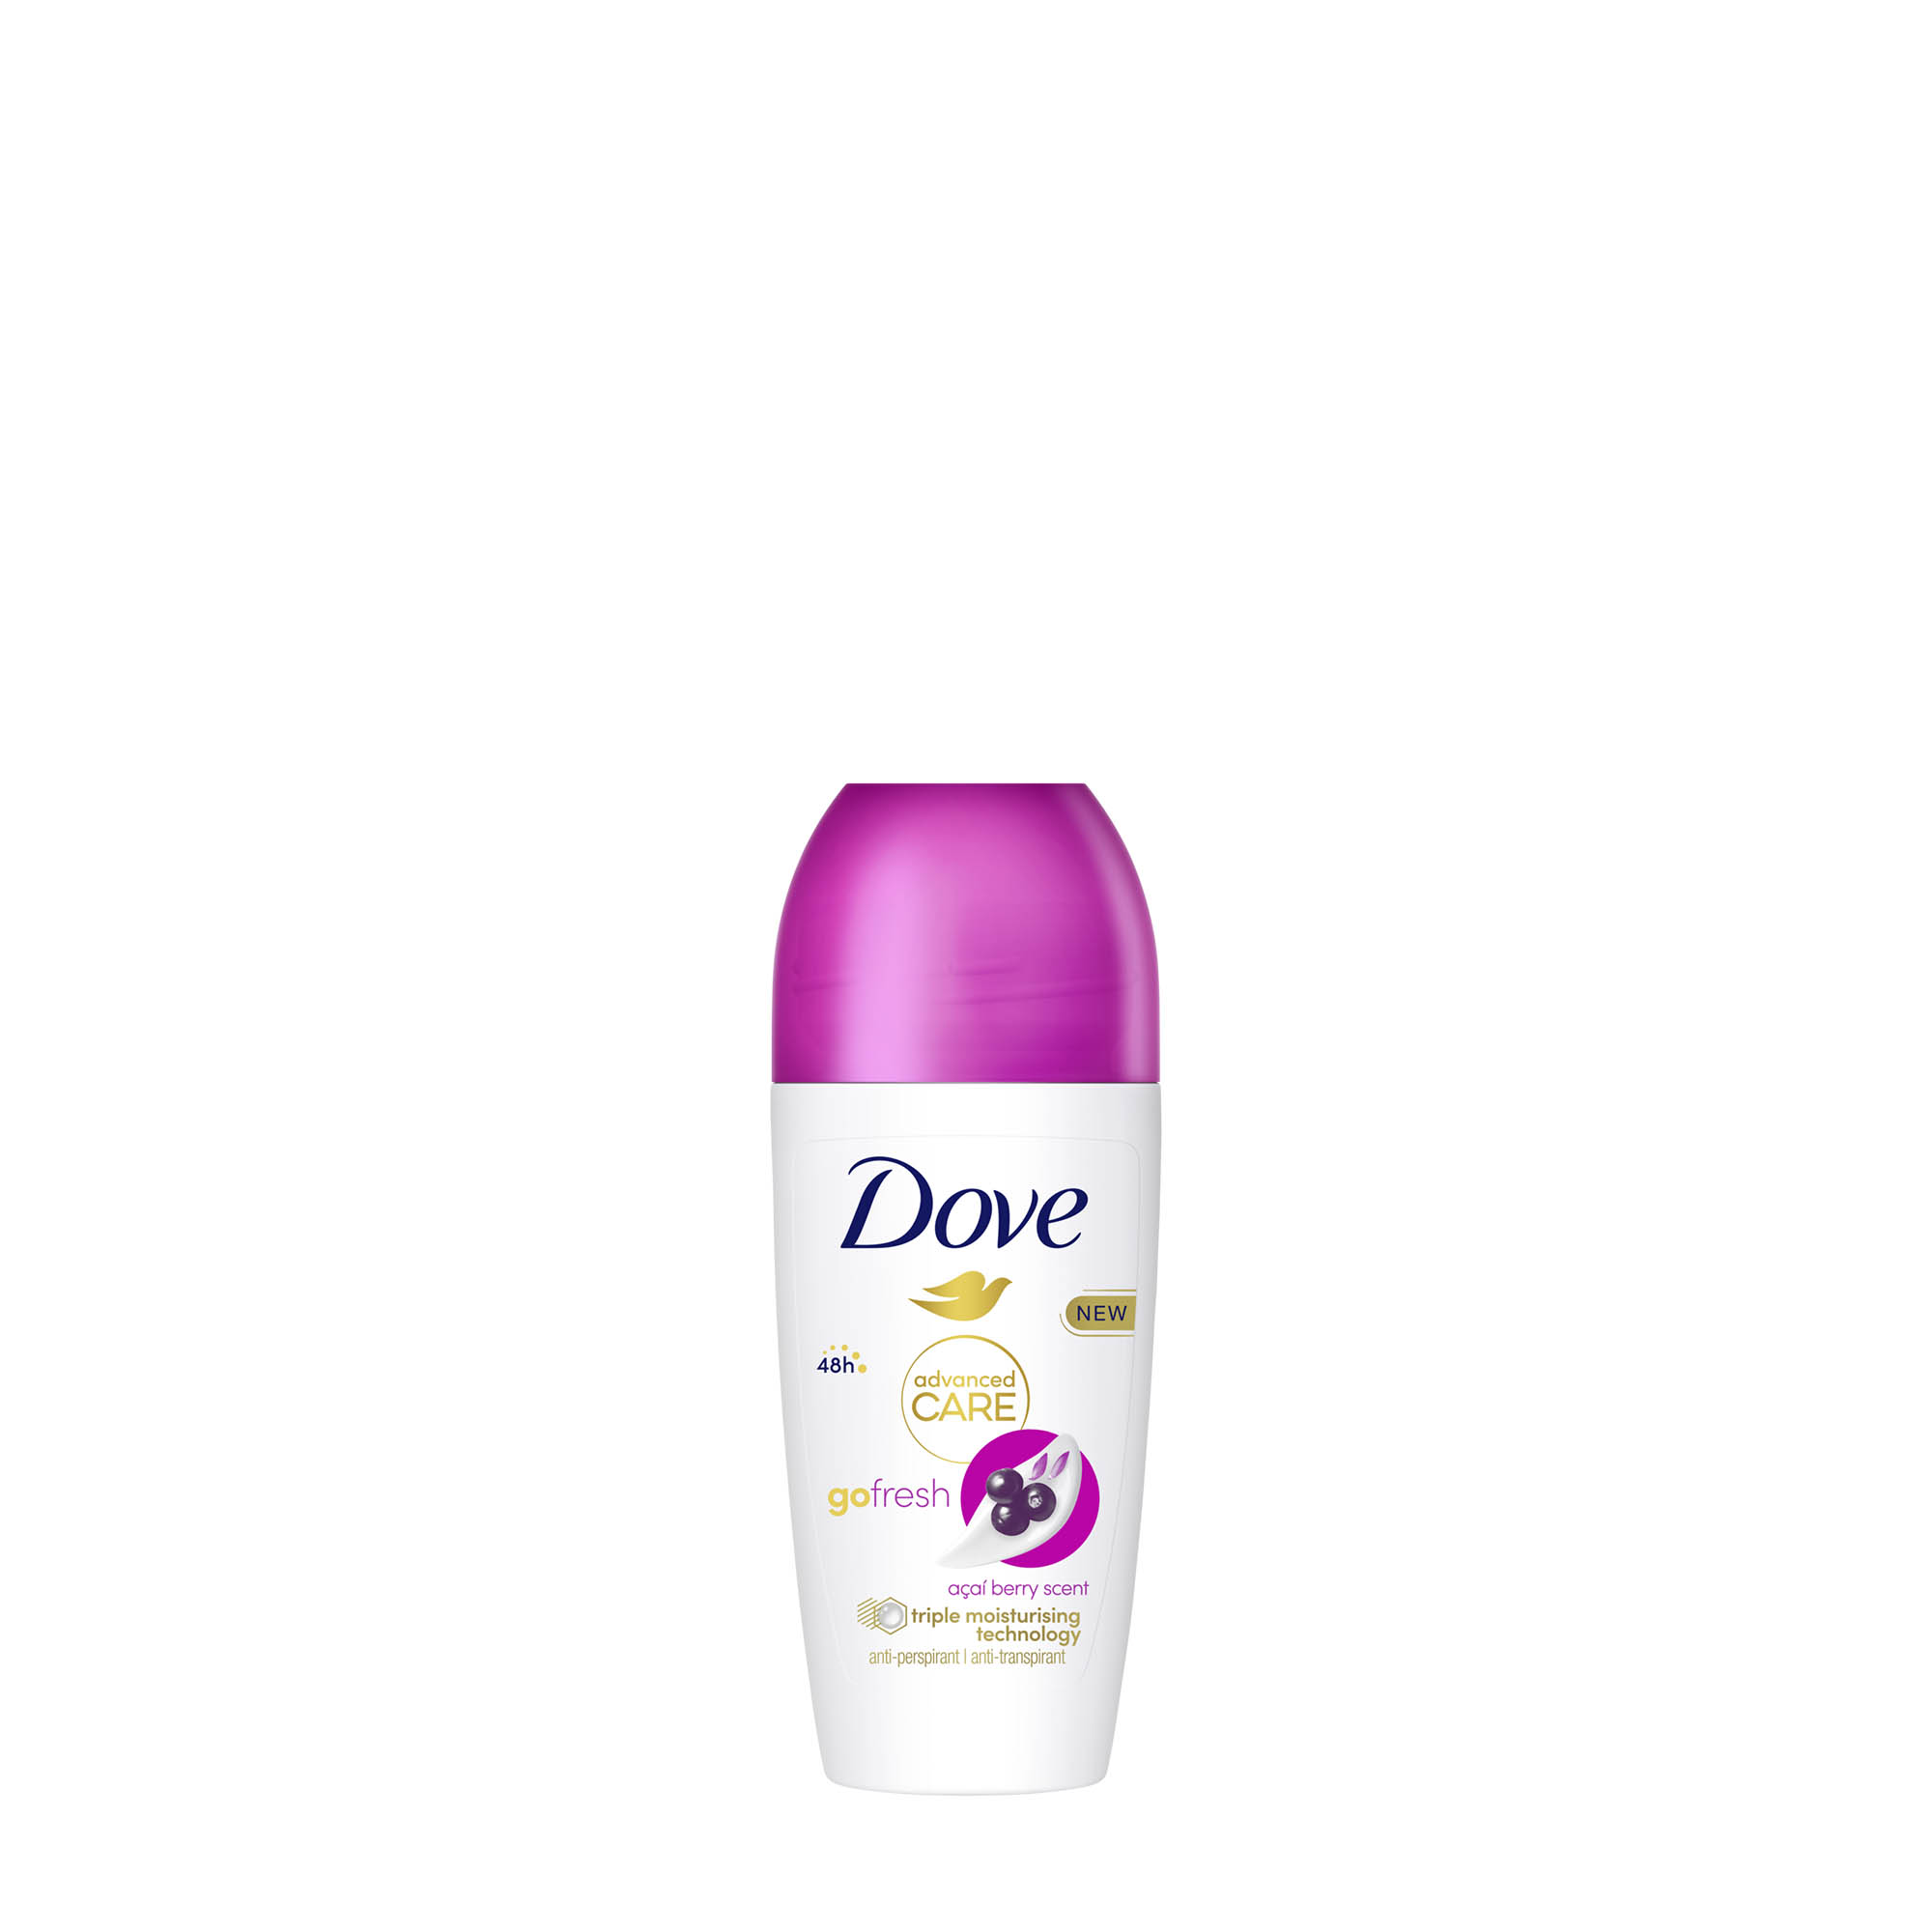 dove deodorant roll on advanced care go fresh acai berry scent